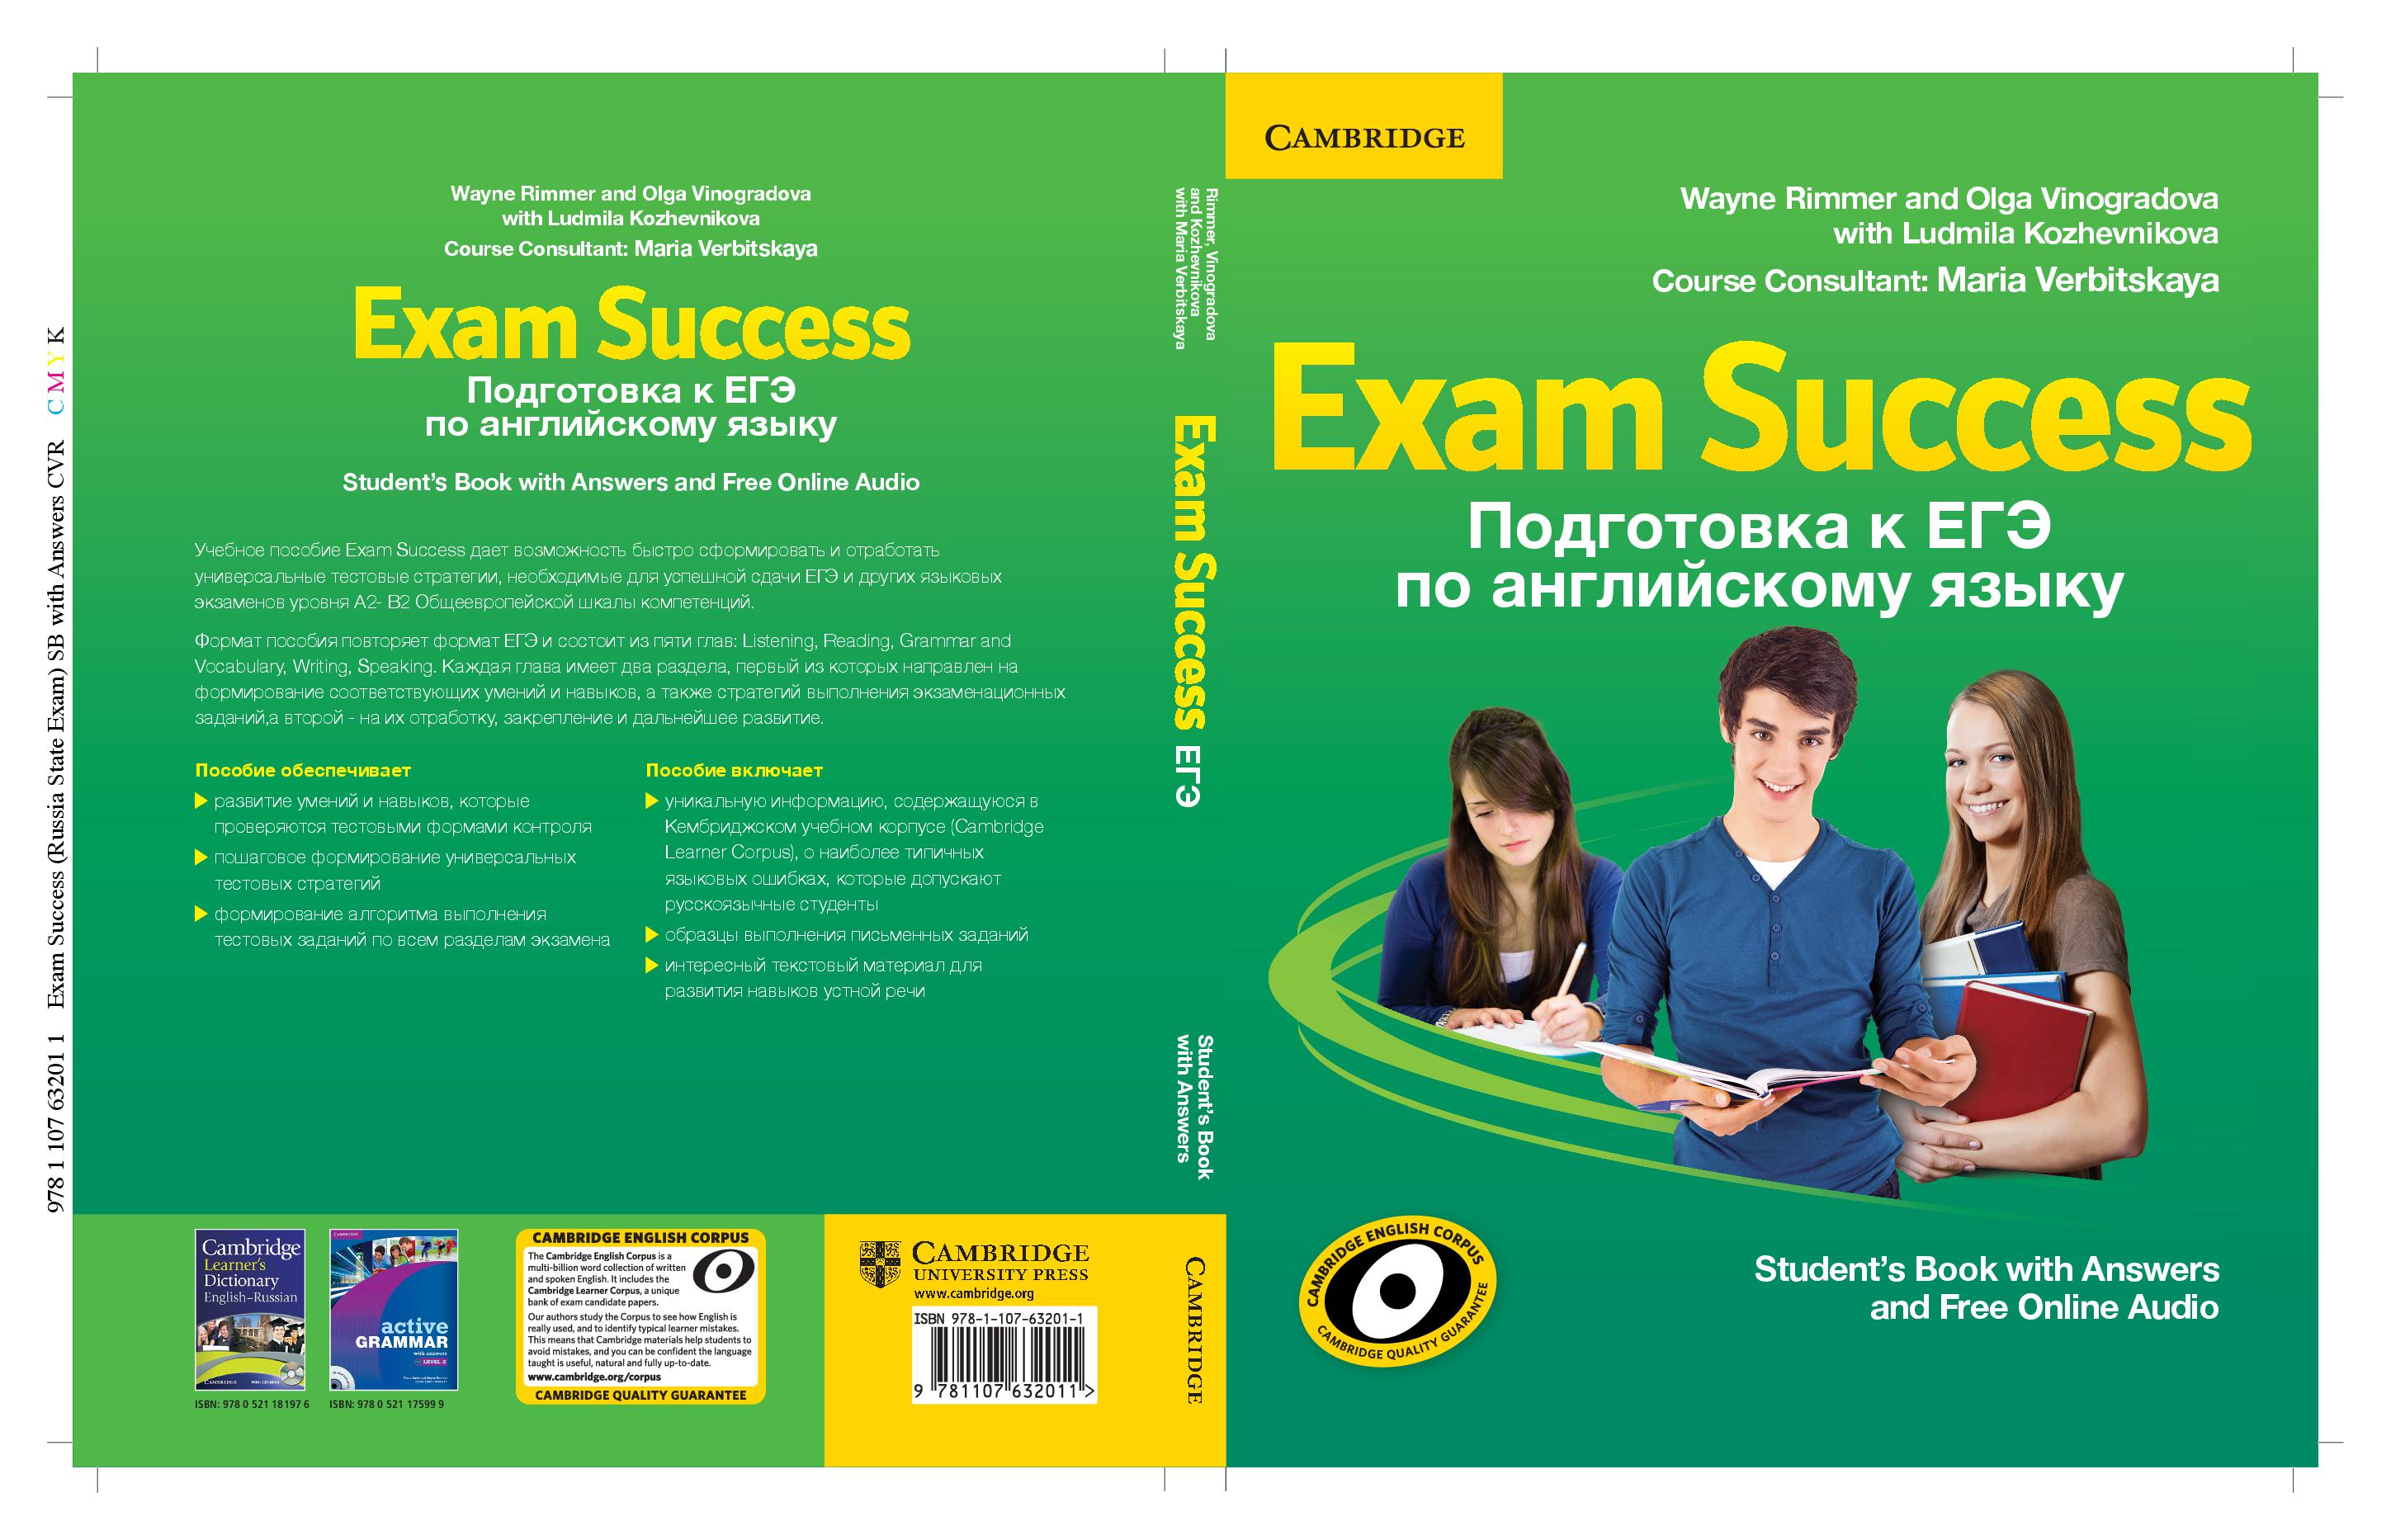 Cambridge prepare. Exam success. Prepare учебник. Пособия от Cambridge University Press. Учебник по английскому языку Cambridge.